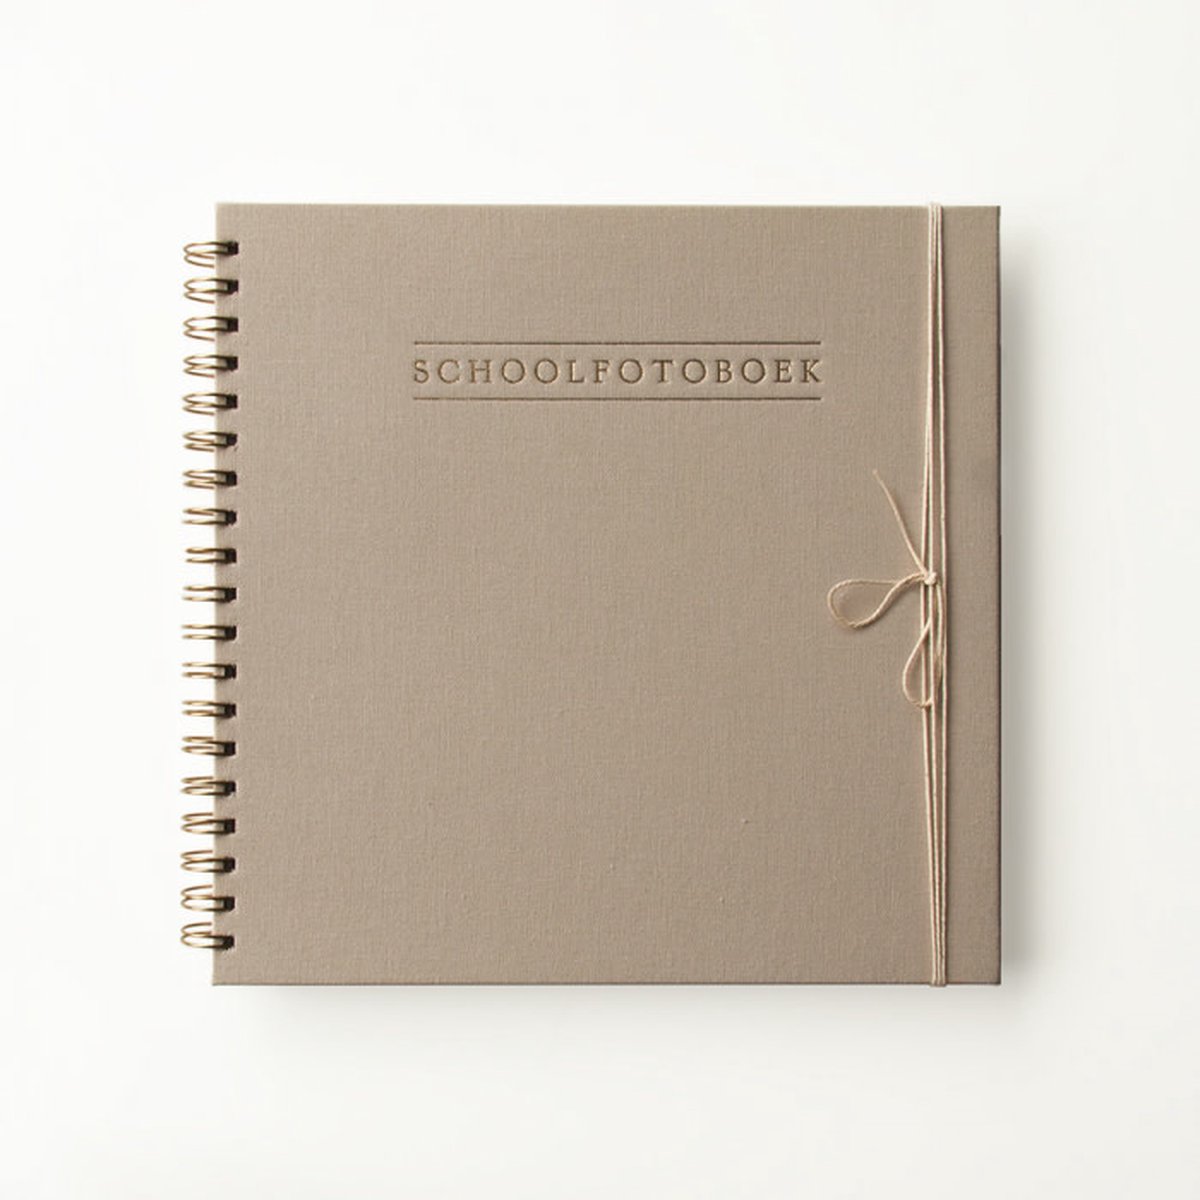 House of Products Schoolfotoboek - Linnen Taupe (NL)